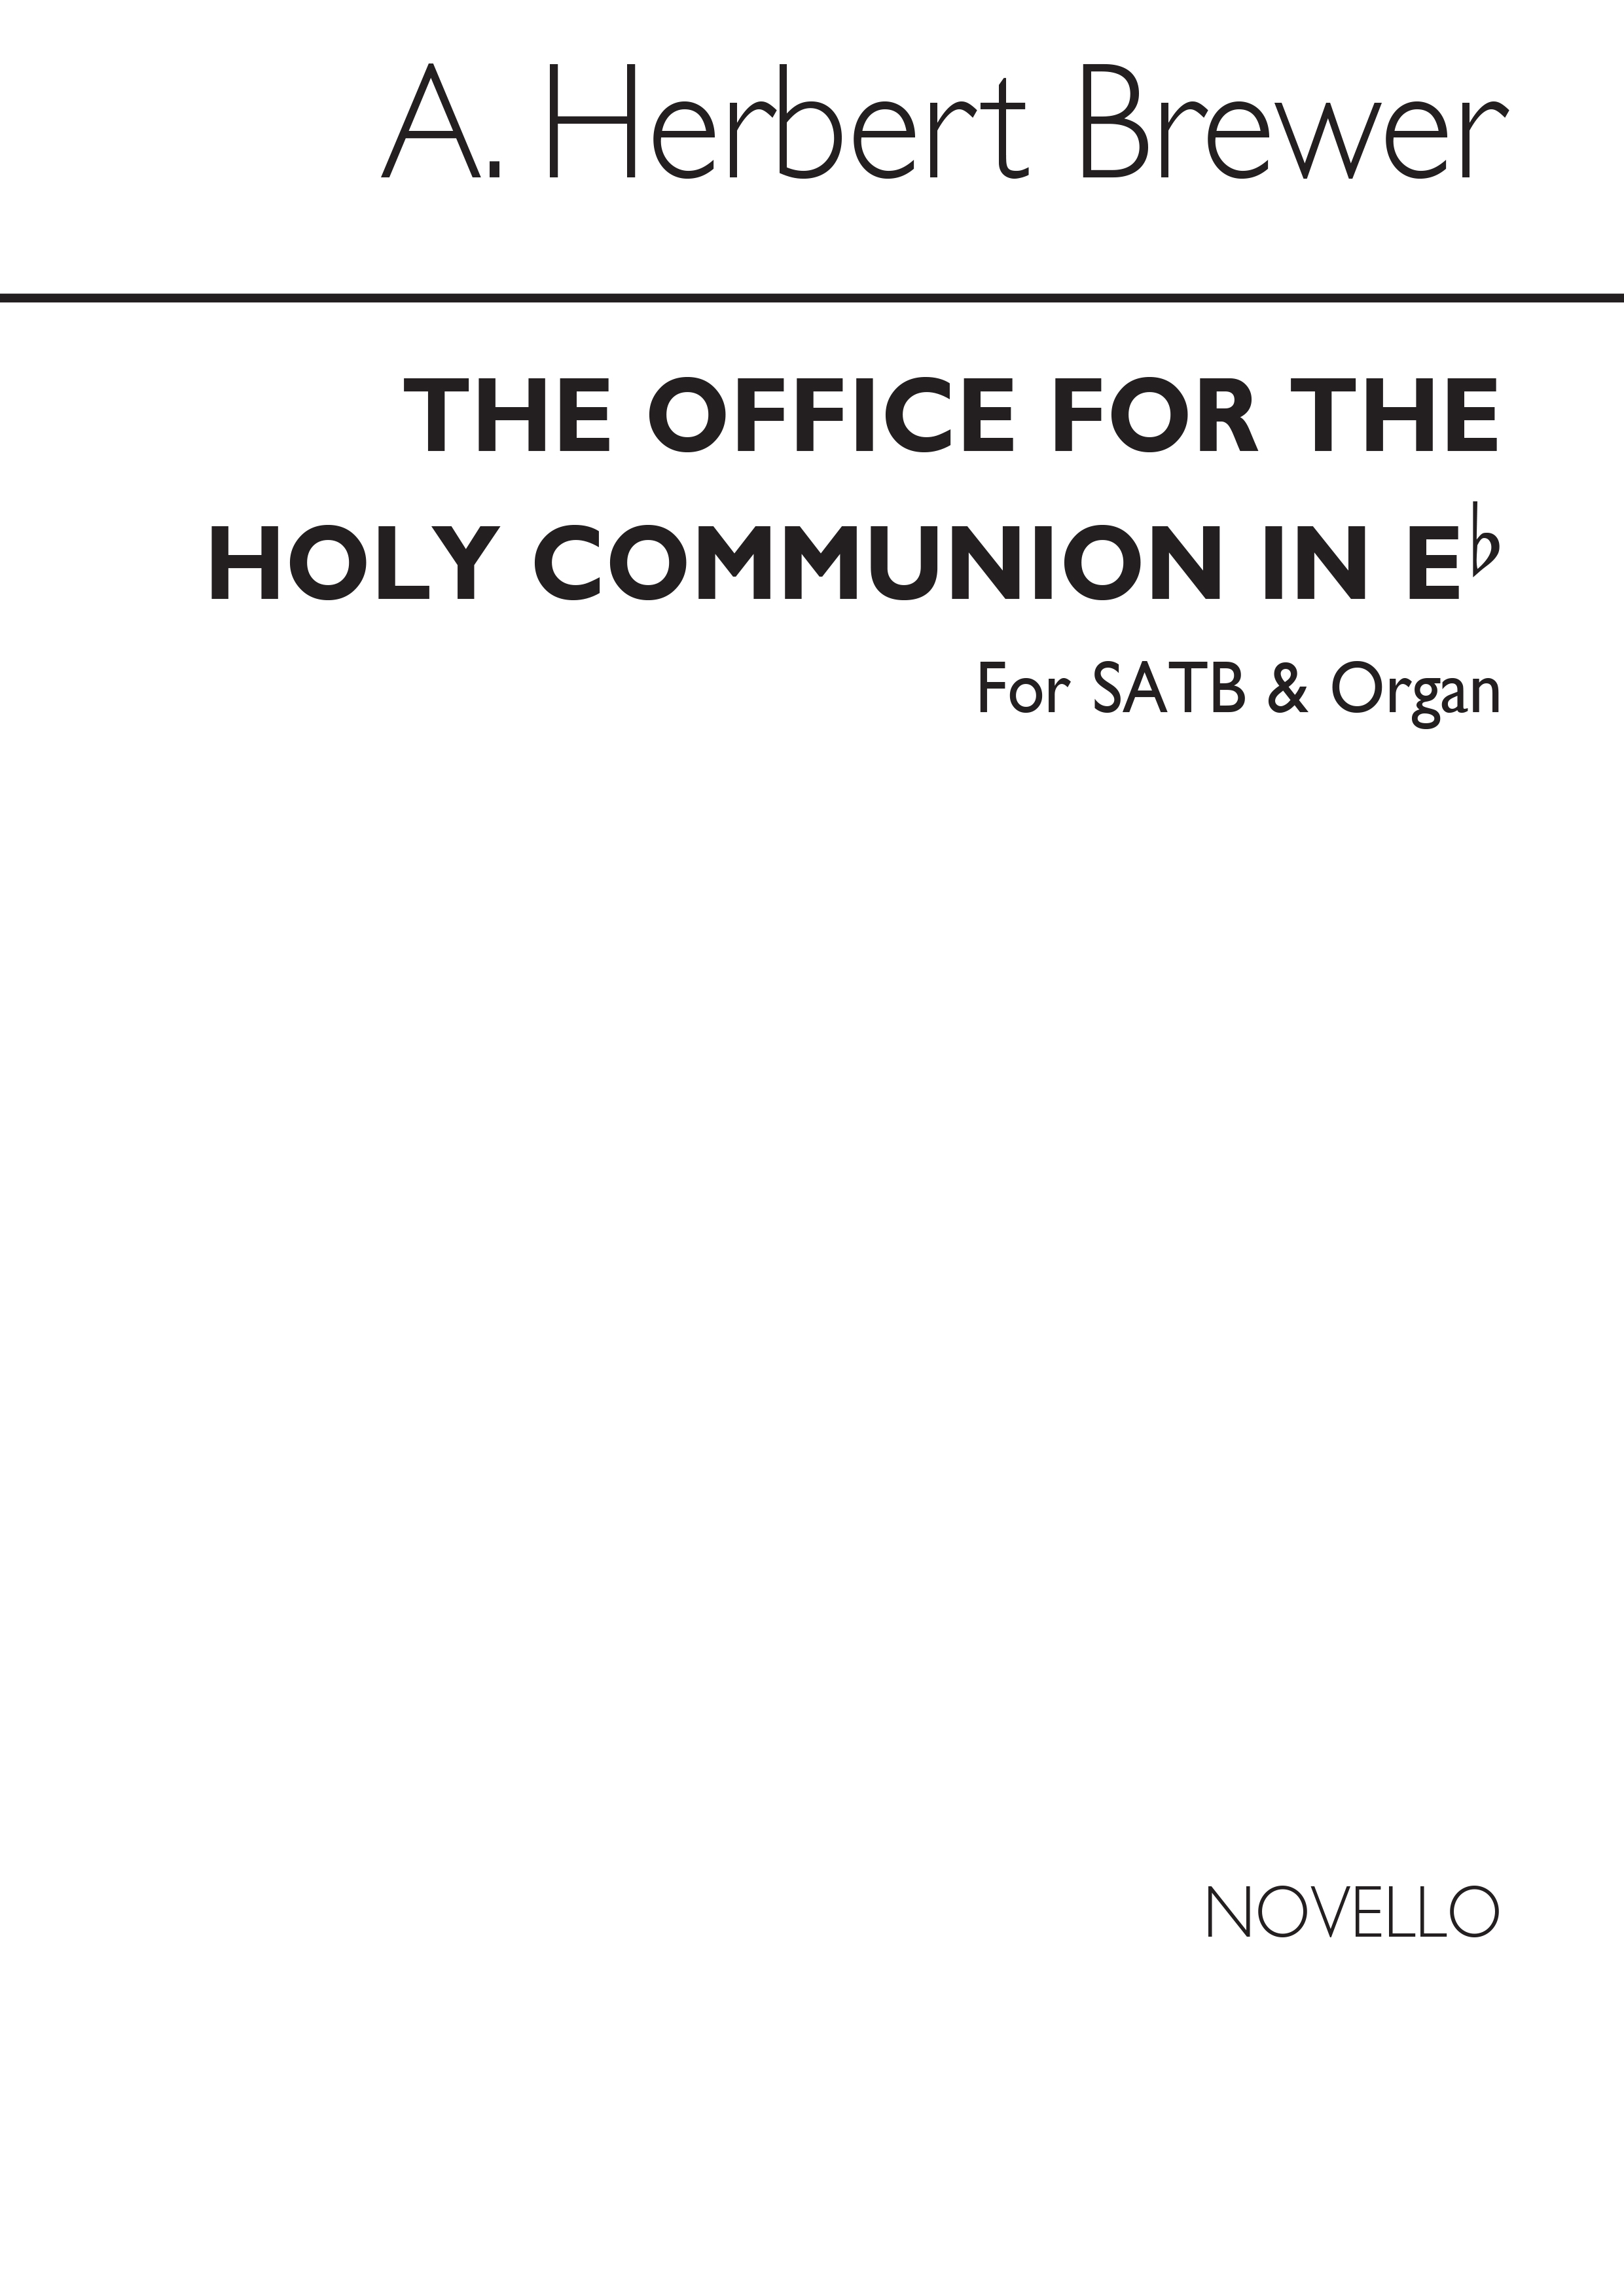 A. Herbert Brewer: Holy Communion Service